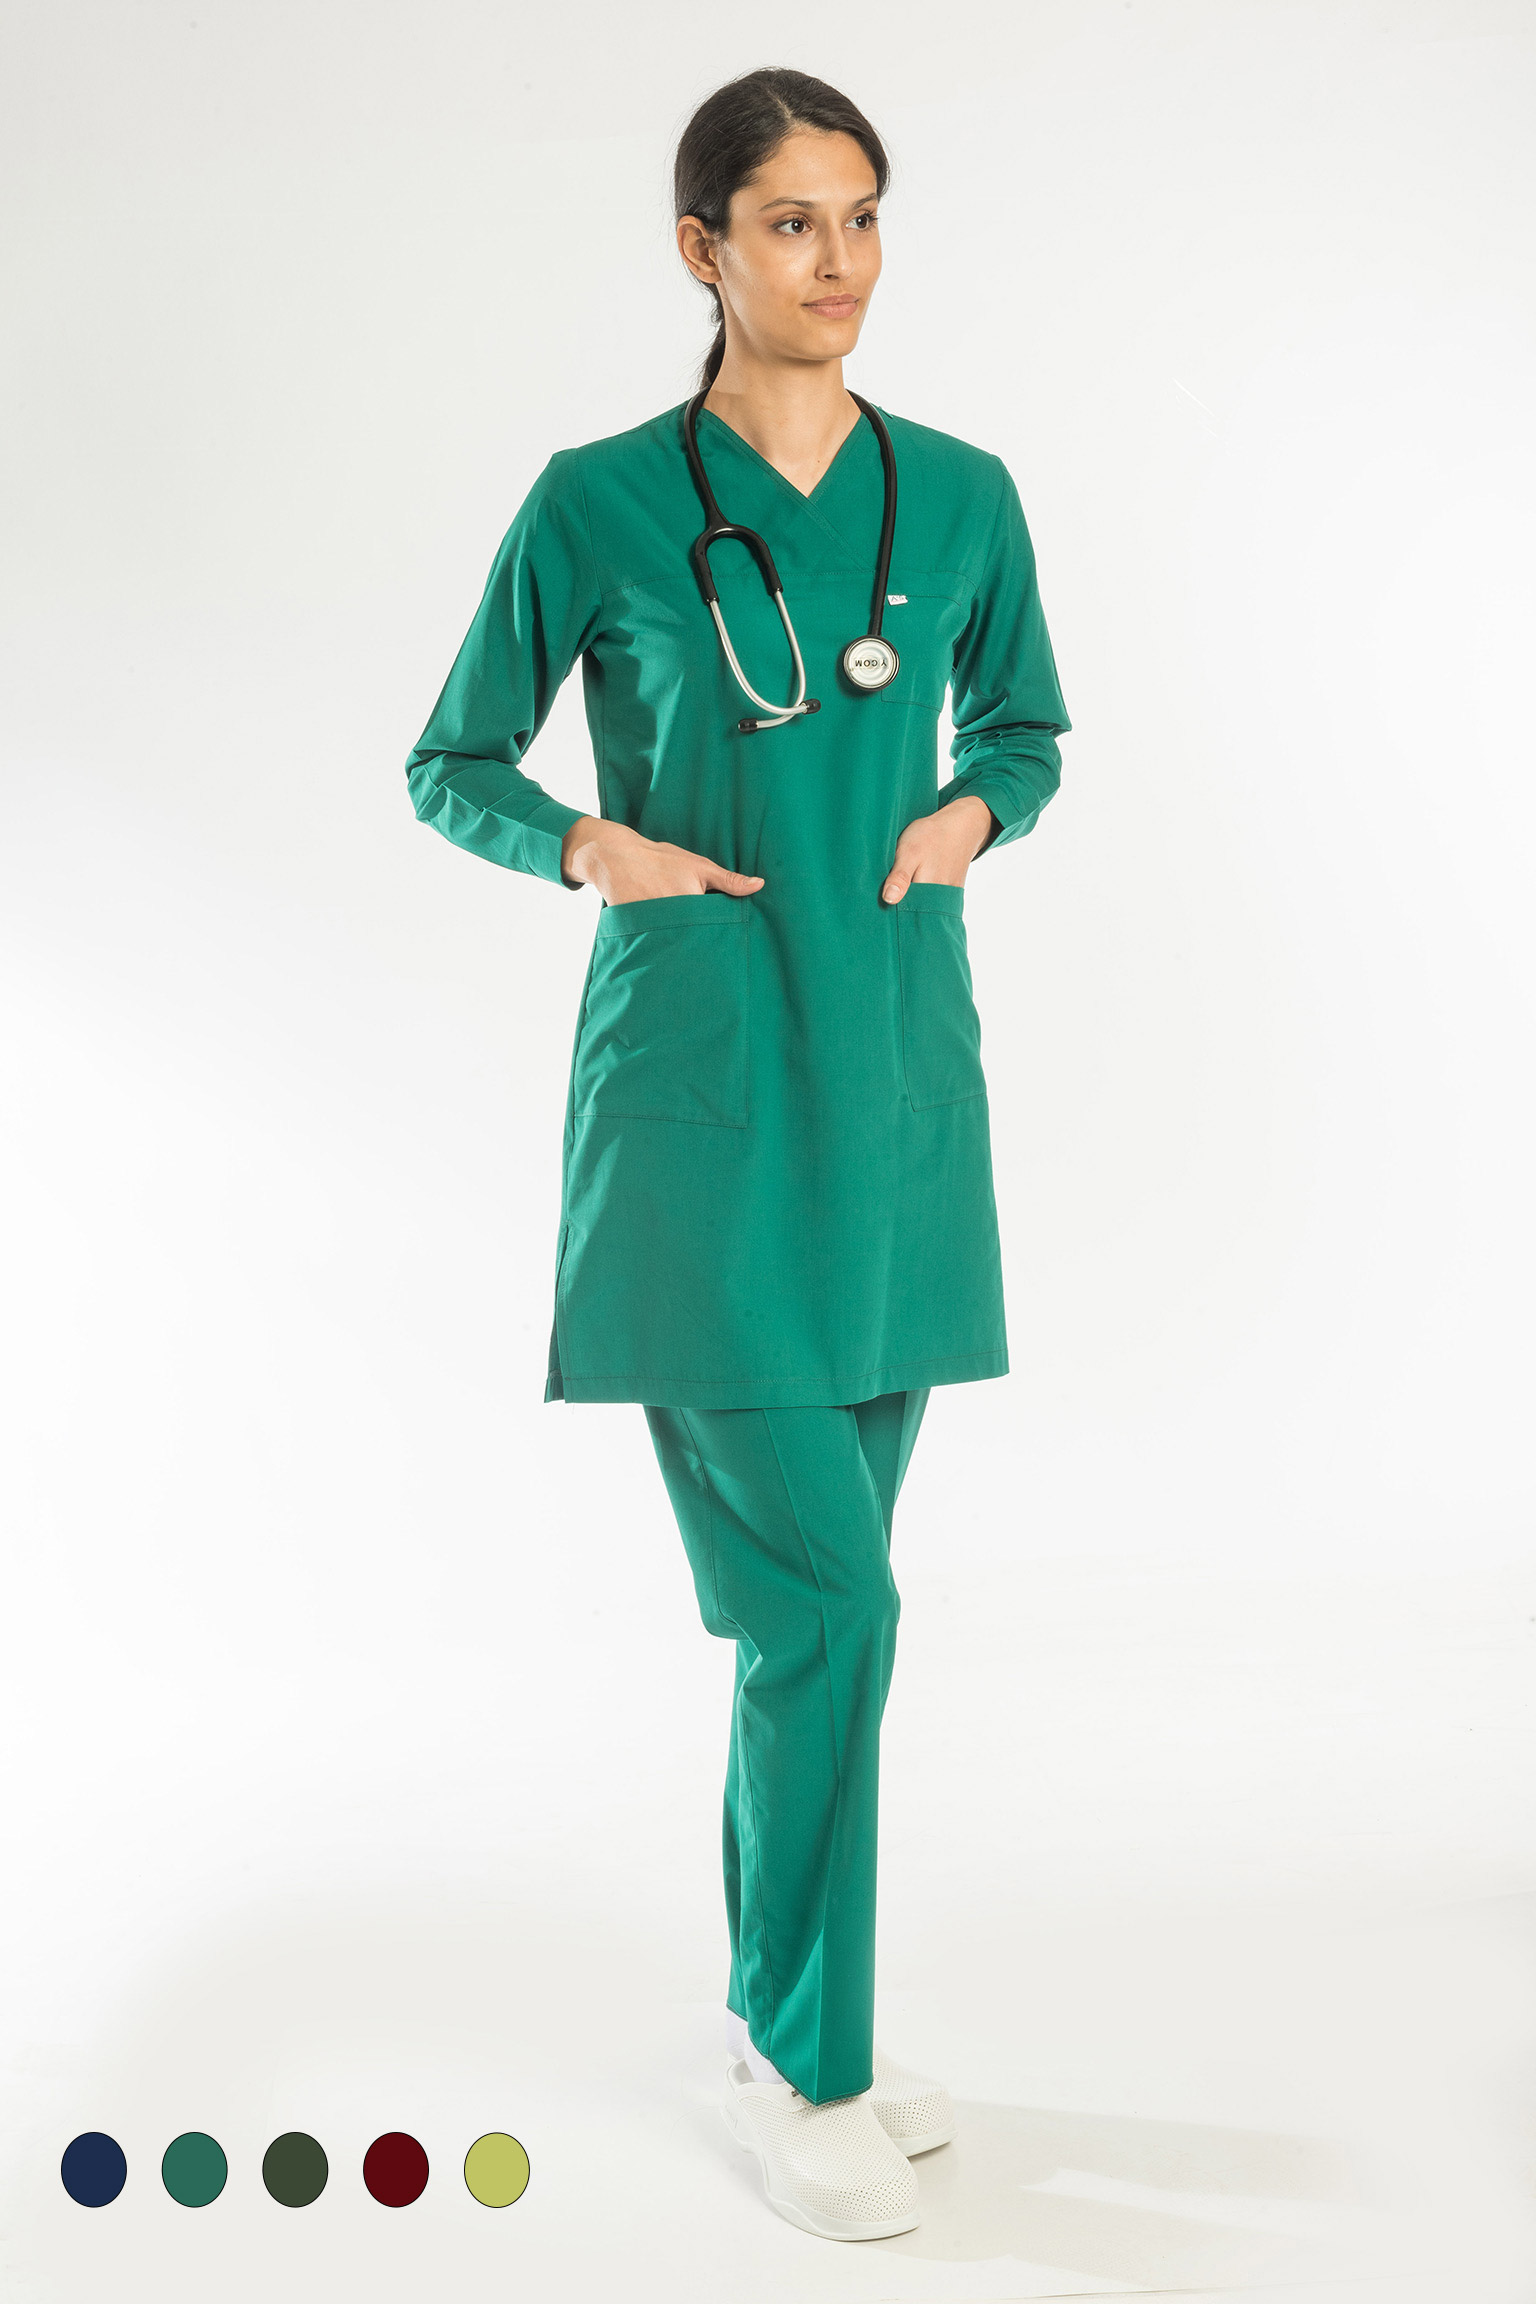 Medikal-Kadın-Doktor-Cerrahi-Giyim-Forma